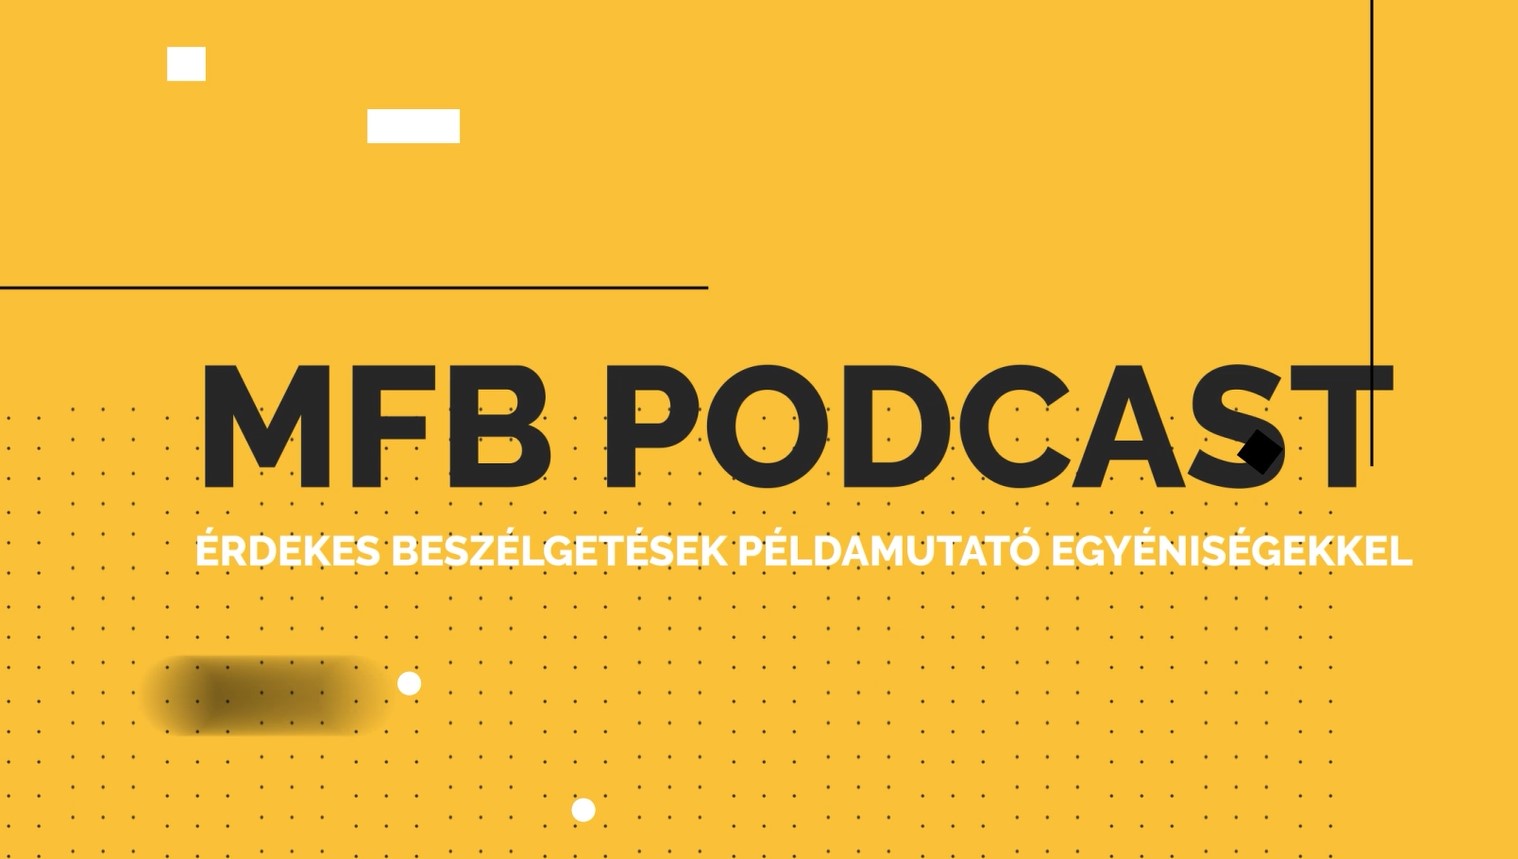 MFB Podcast – Beszélgetés Dr. Tárnoki Ádám Domokos és Dr. Tárnoki Dávid László radiológusokkal, a hazai ikerregiszterről és az ikerkutatásáról